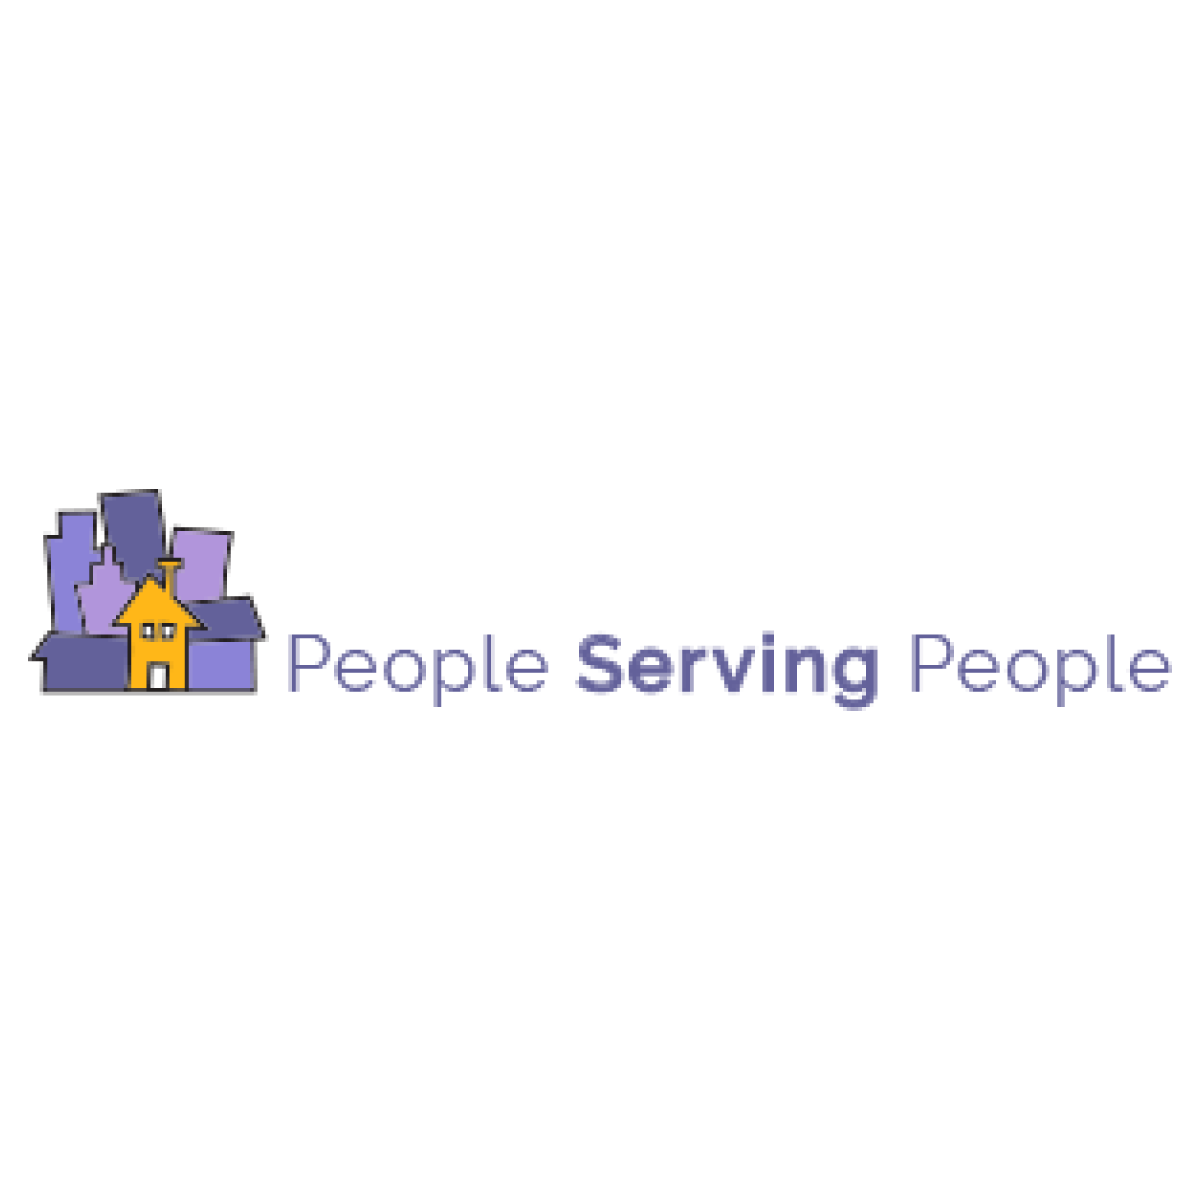 People Serving People | peopleservingpeople.org